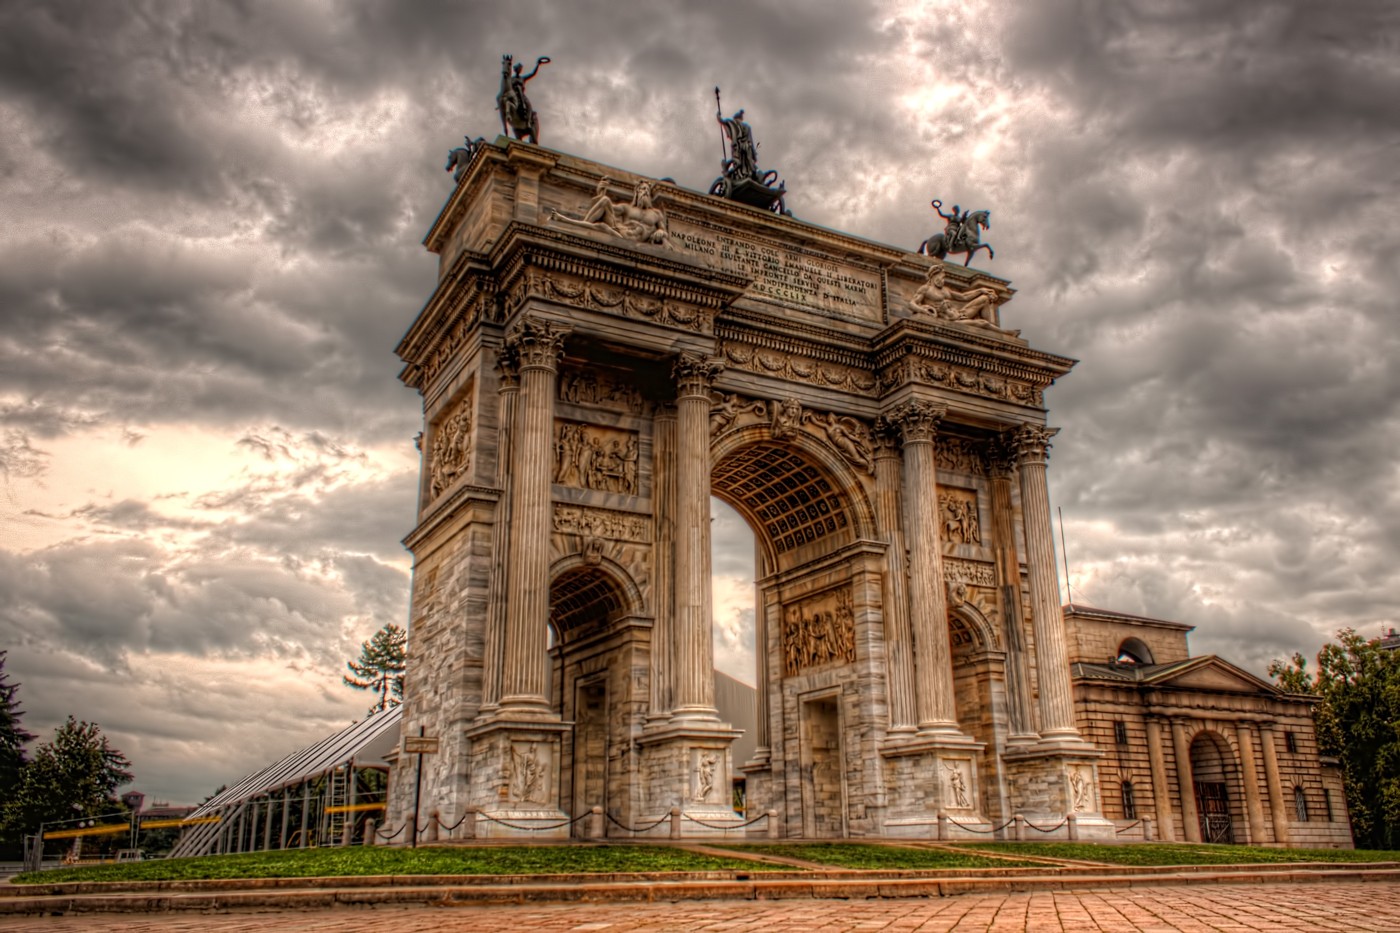 Porta Sempione, Arch of Peace, Milan